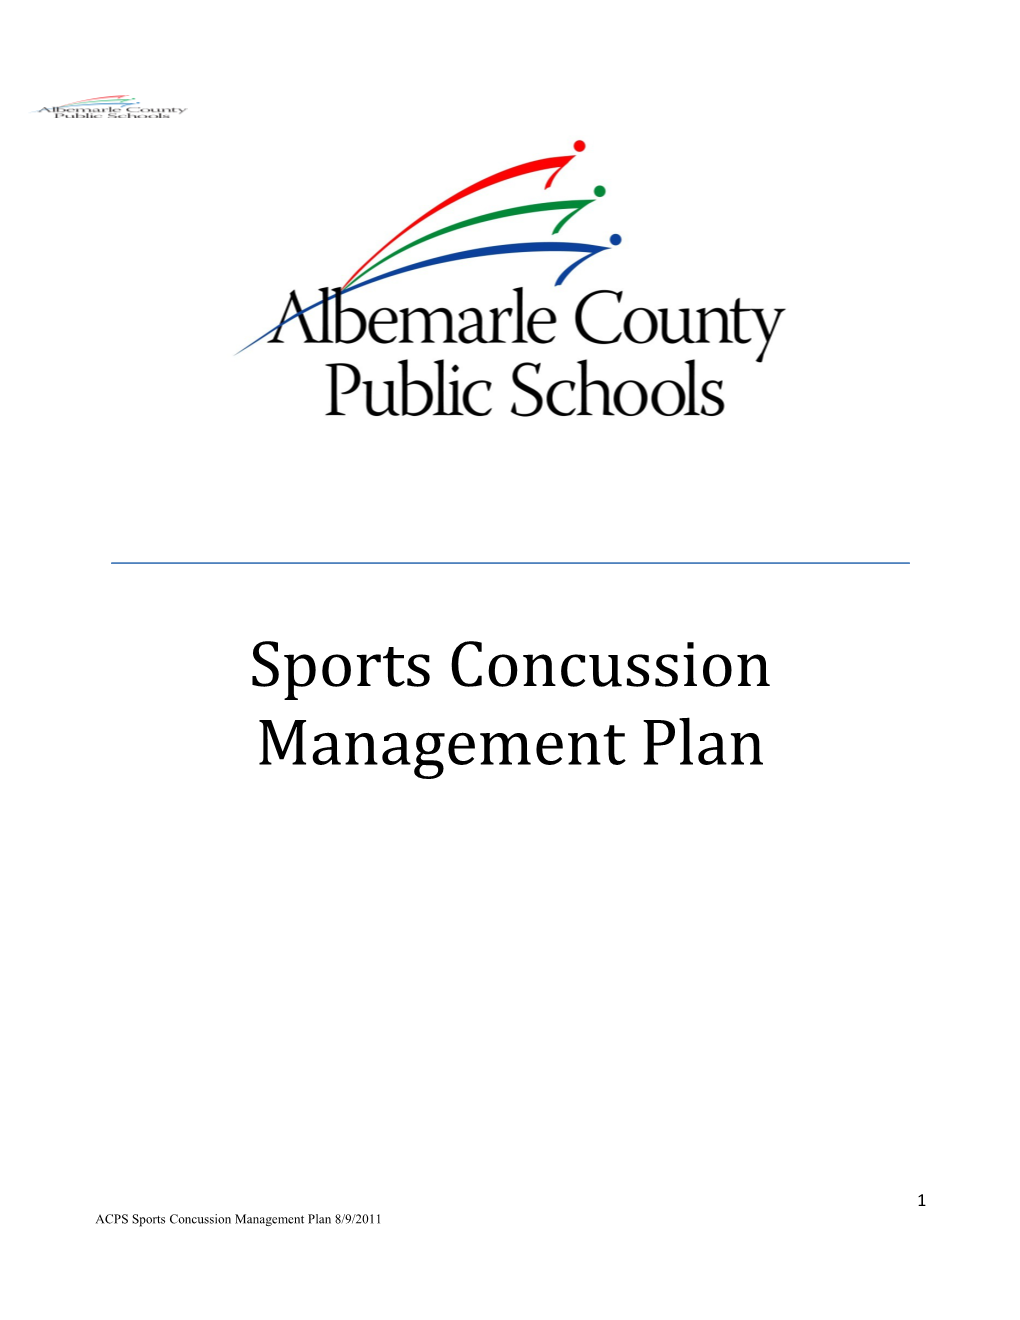 Sports Concussion Management Plan